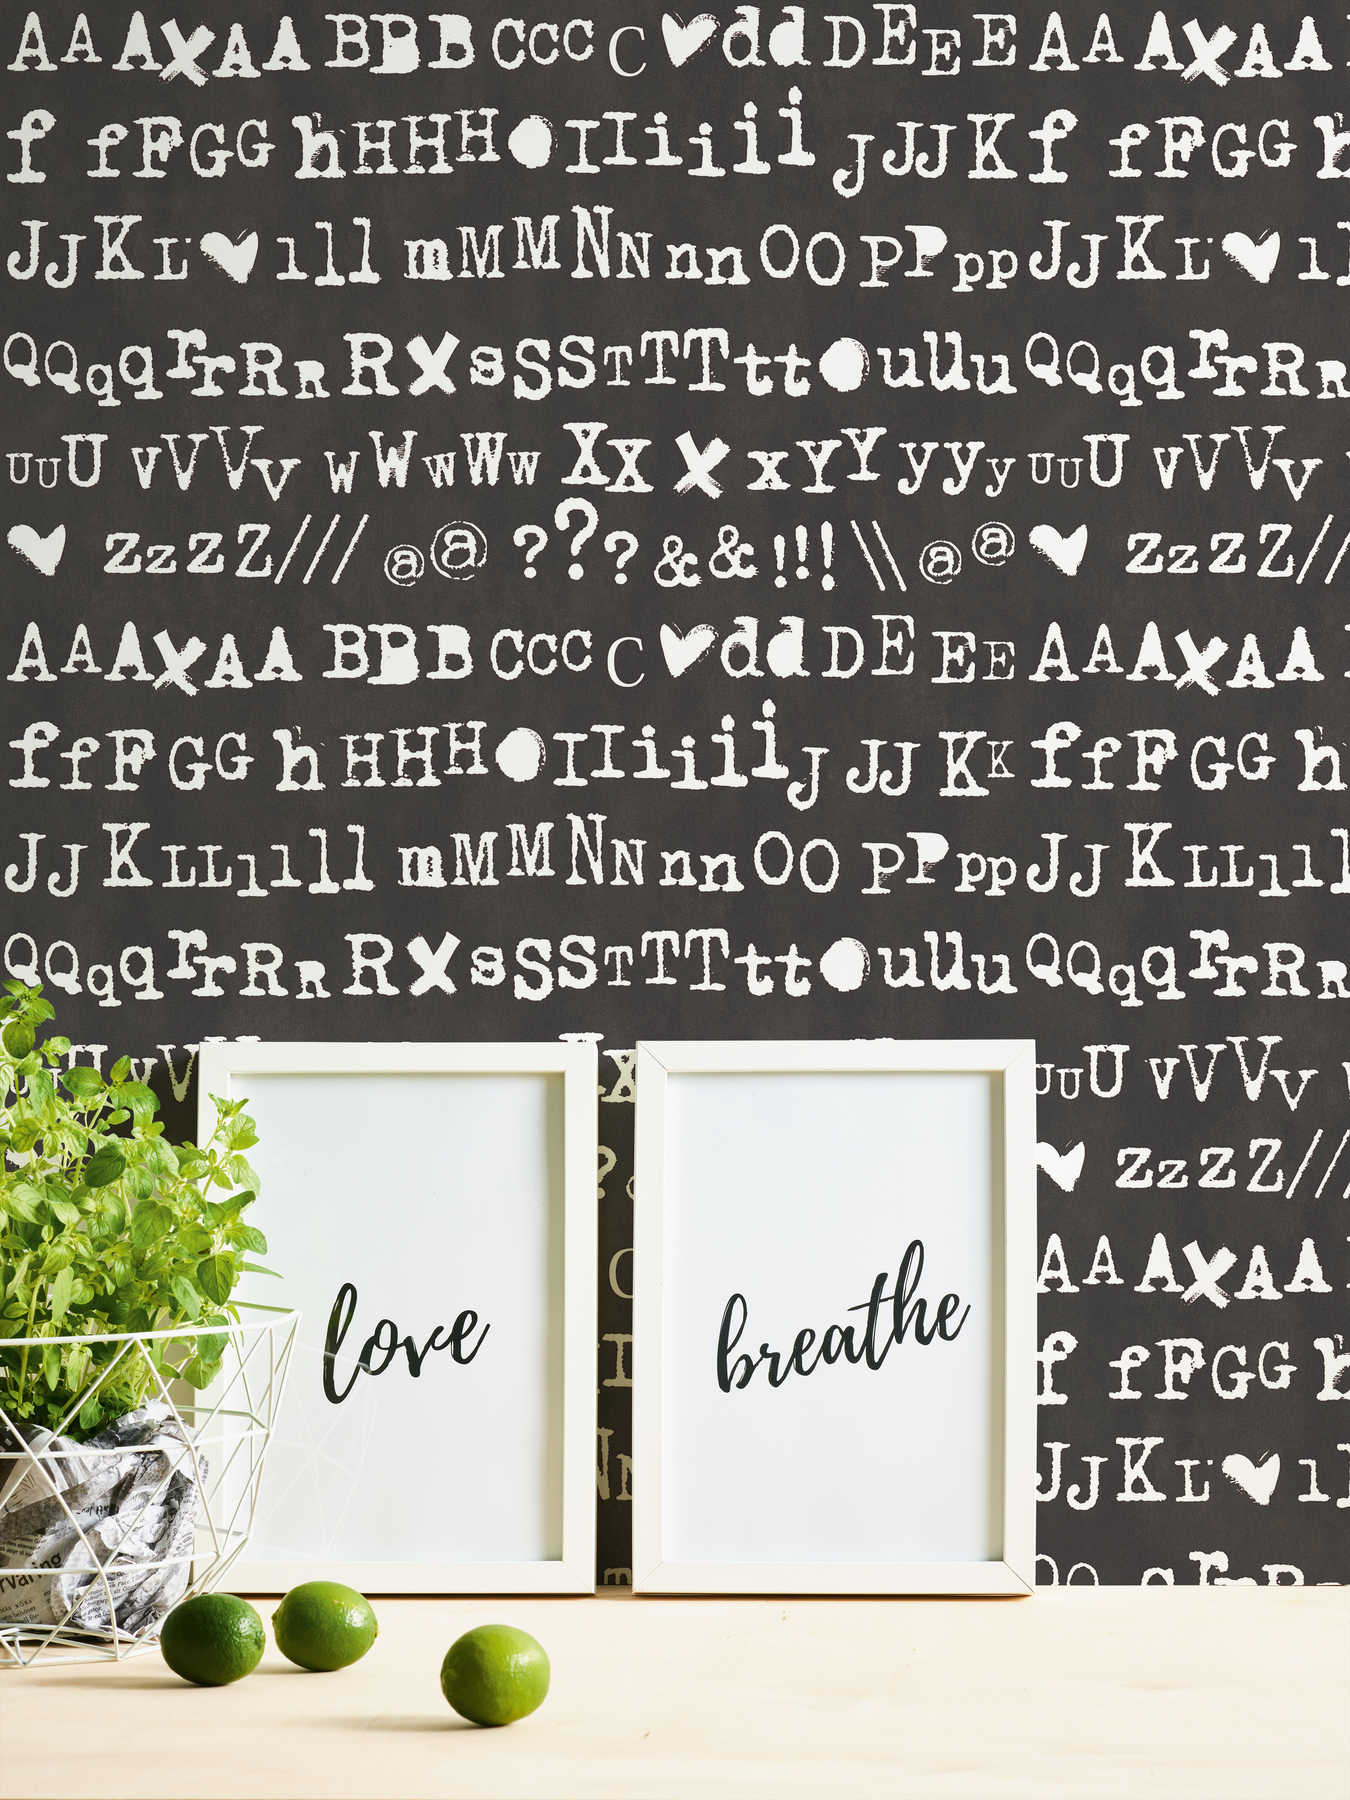             Schwarz-Weiß Tapete mit Lettern im Typografie Stil
        